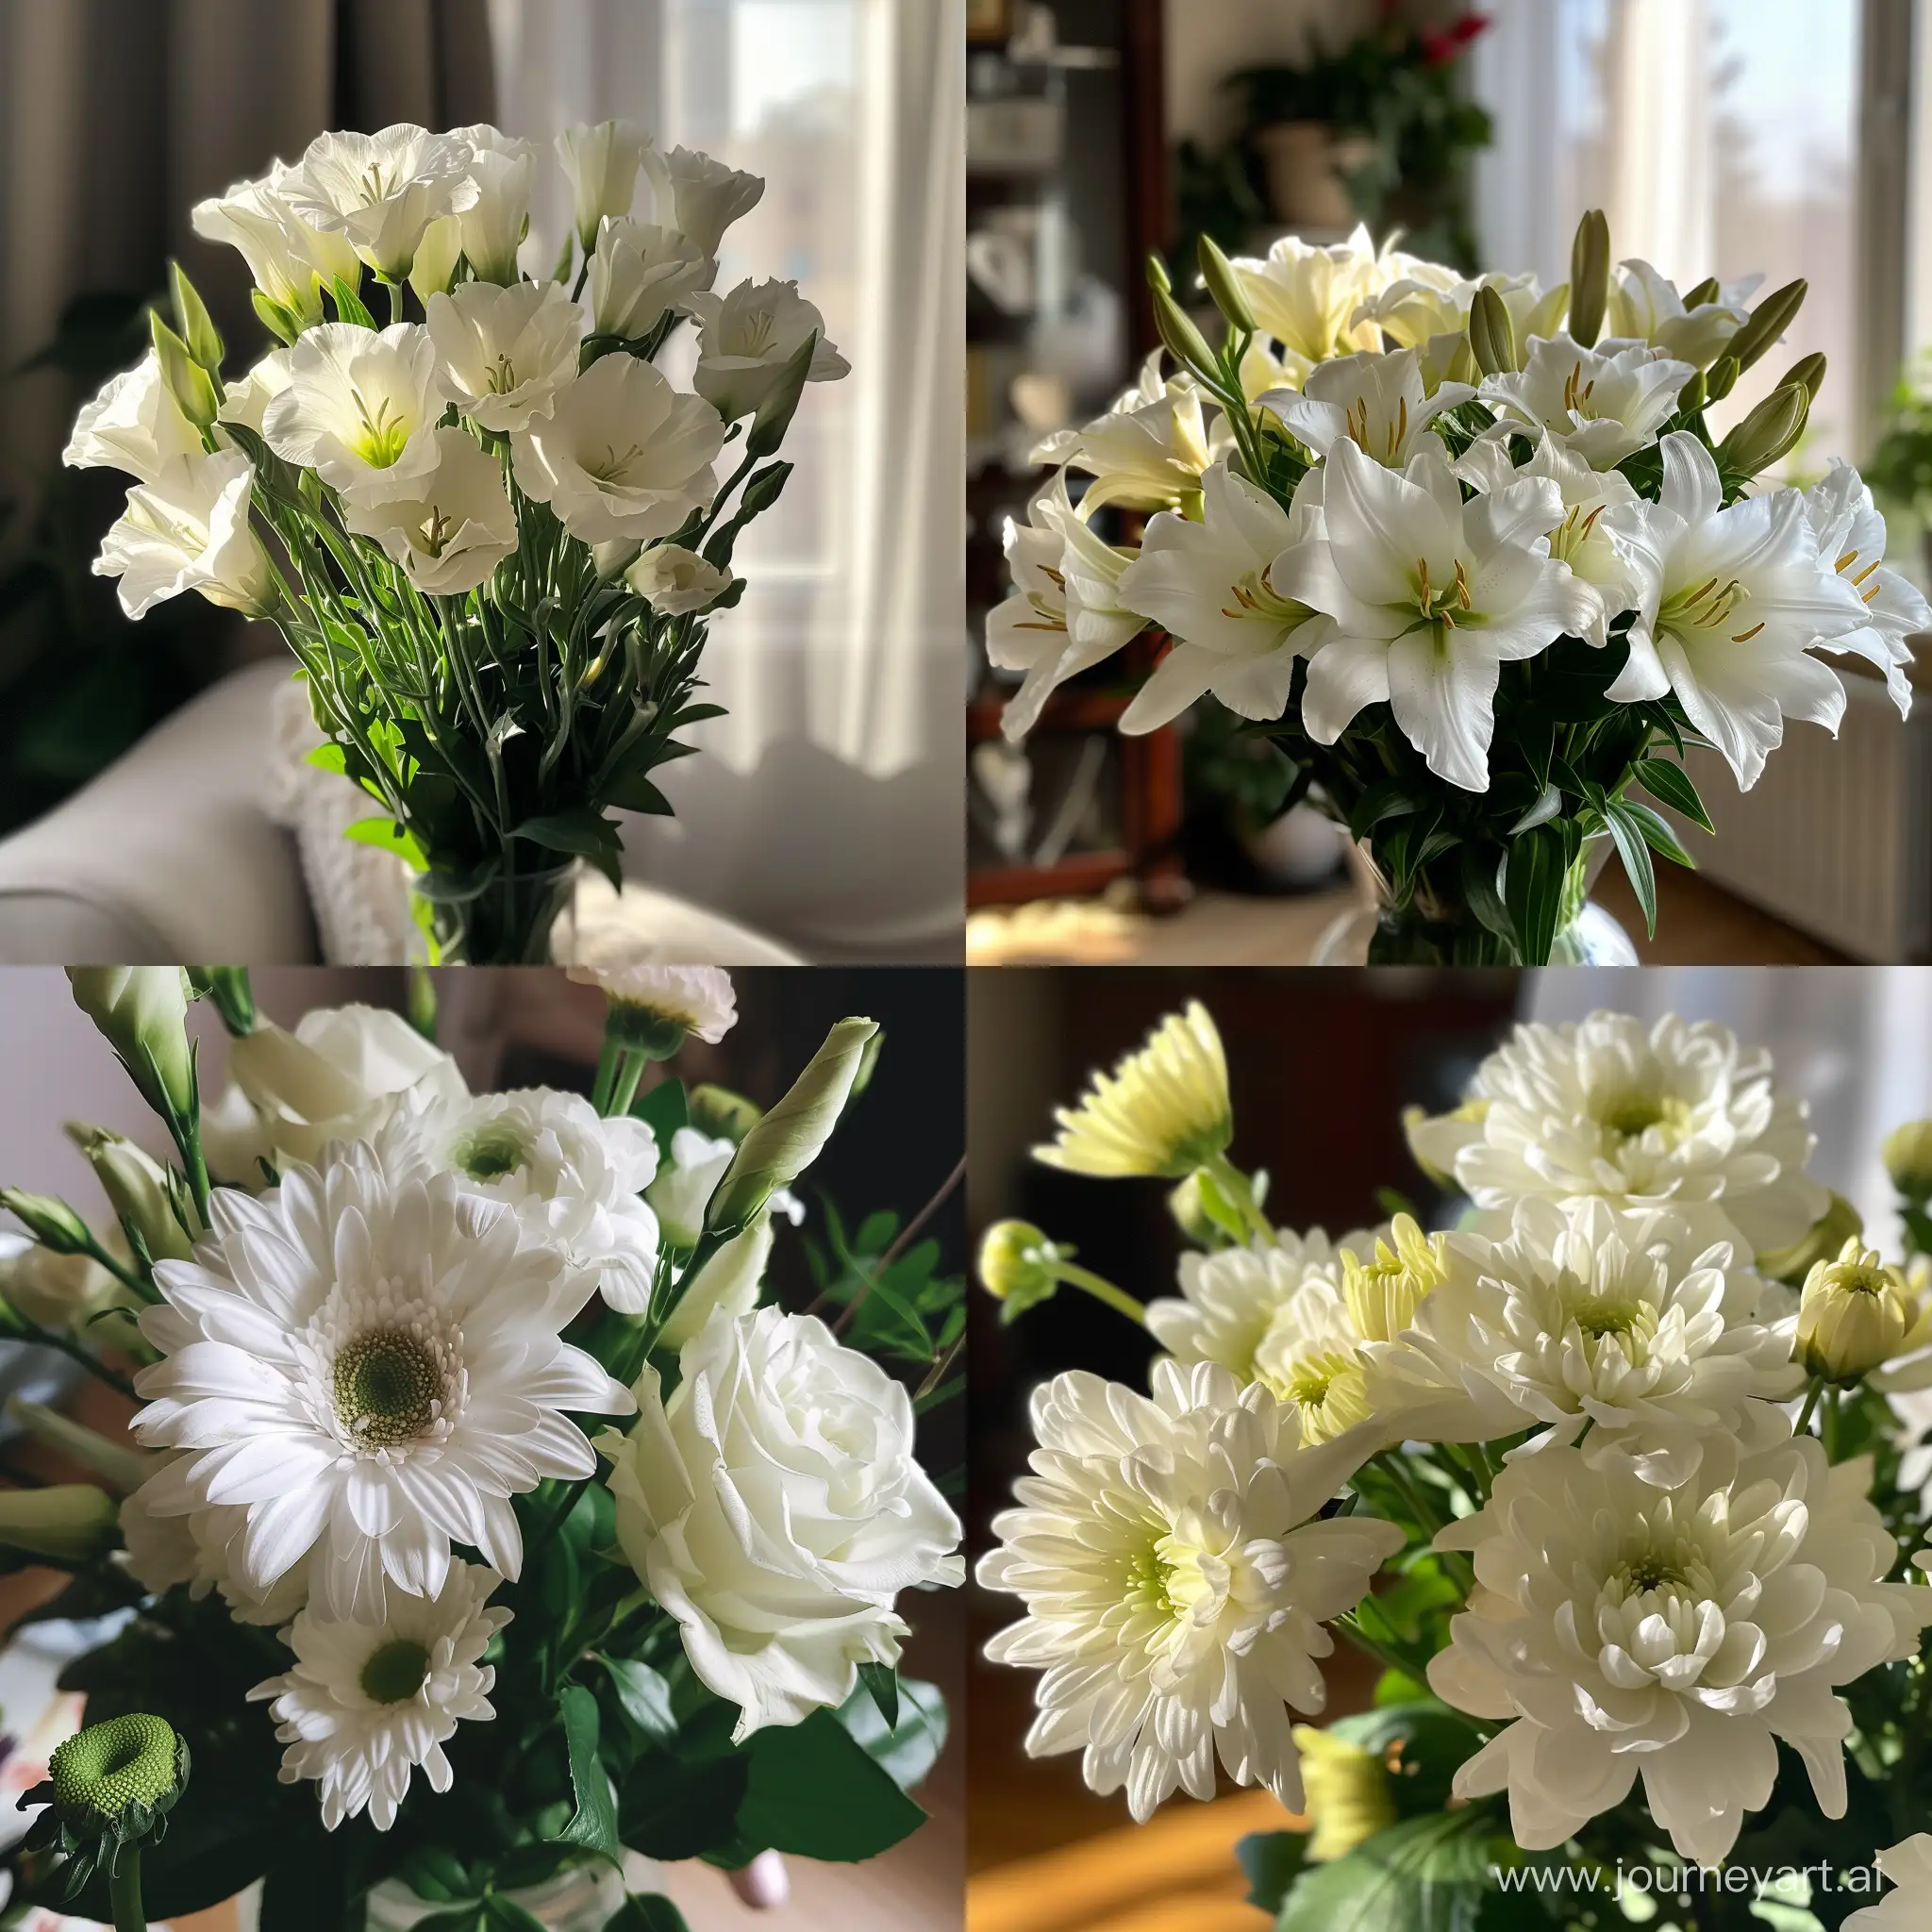 пост в вконтакте, мой прошедший день рождения, в подарок белые цветы